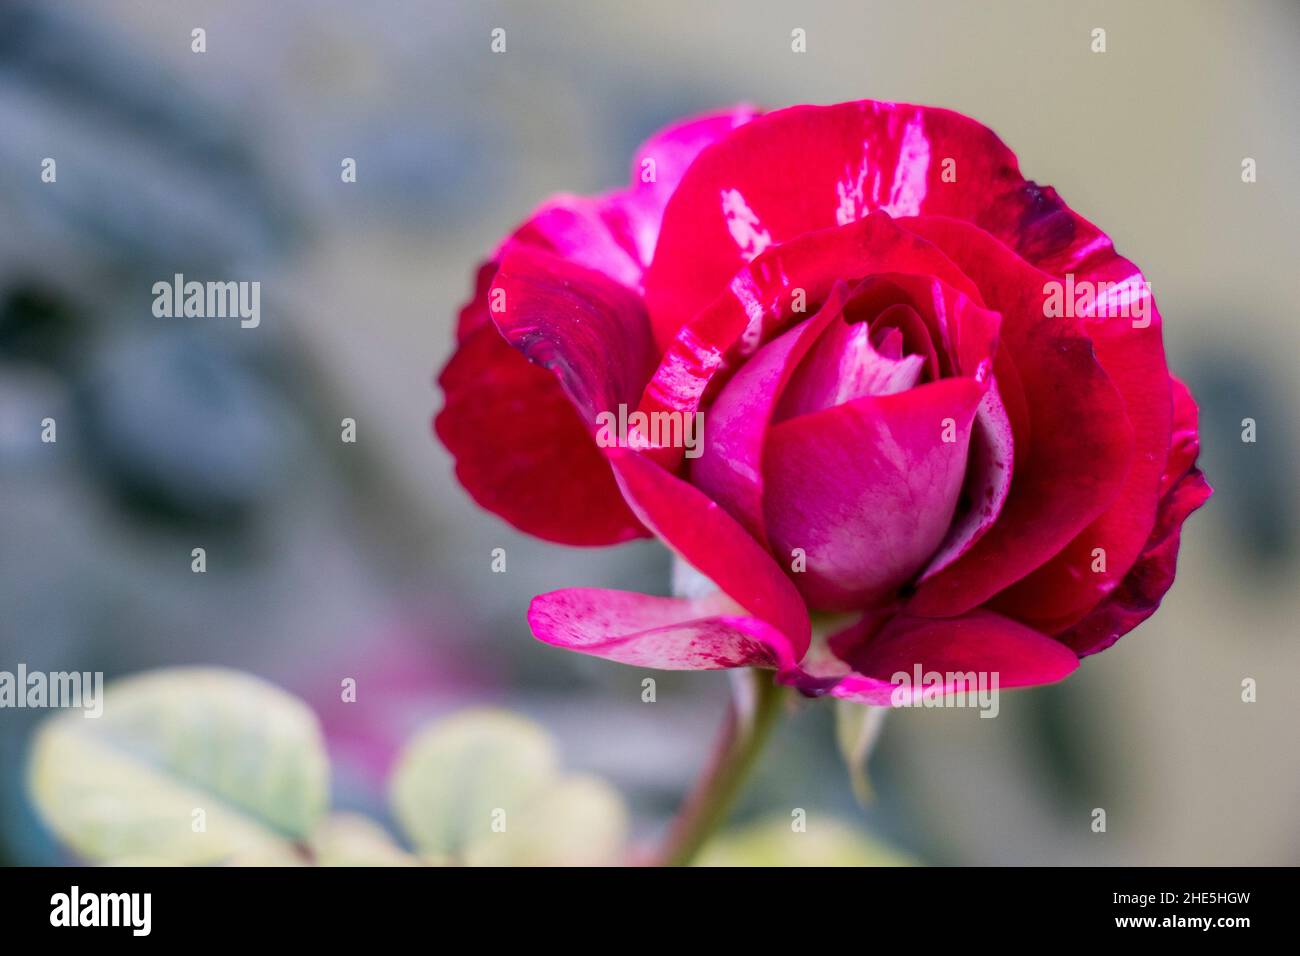 image de la fleur de rose de dabra abrade Banque D'Images